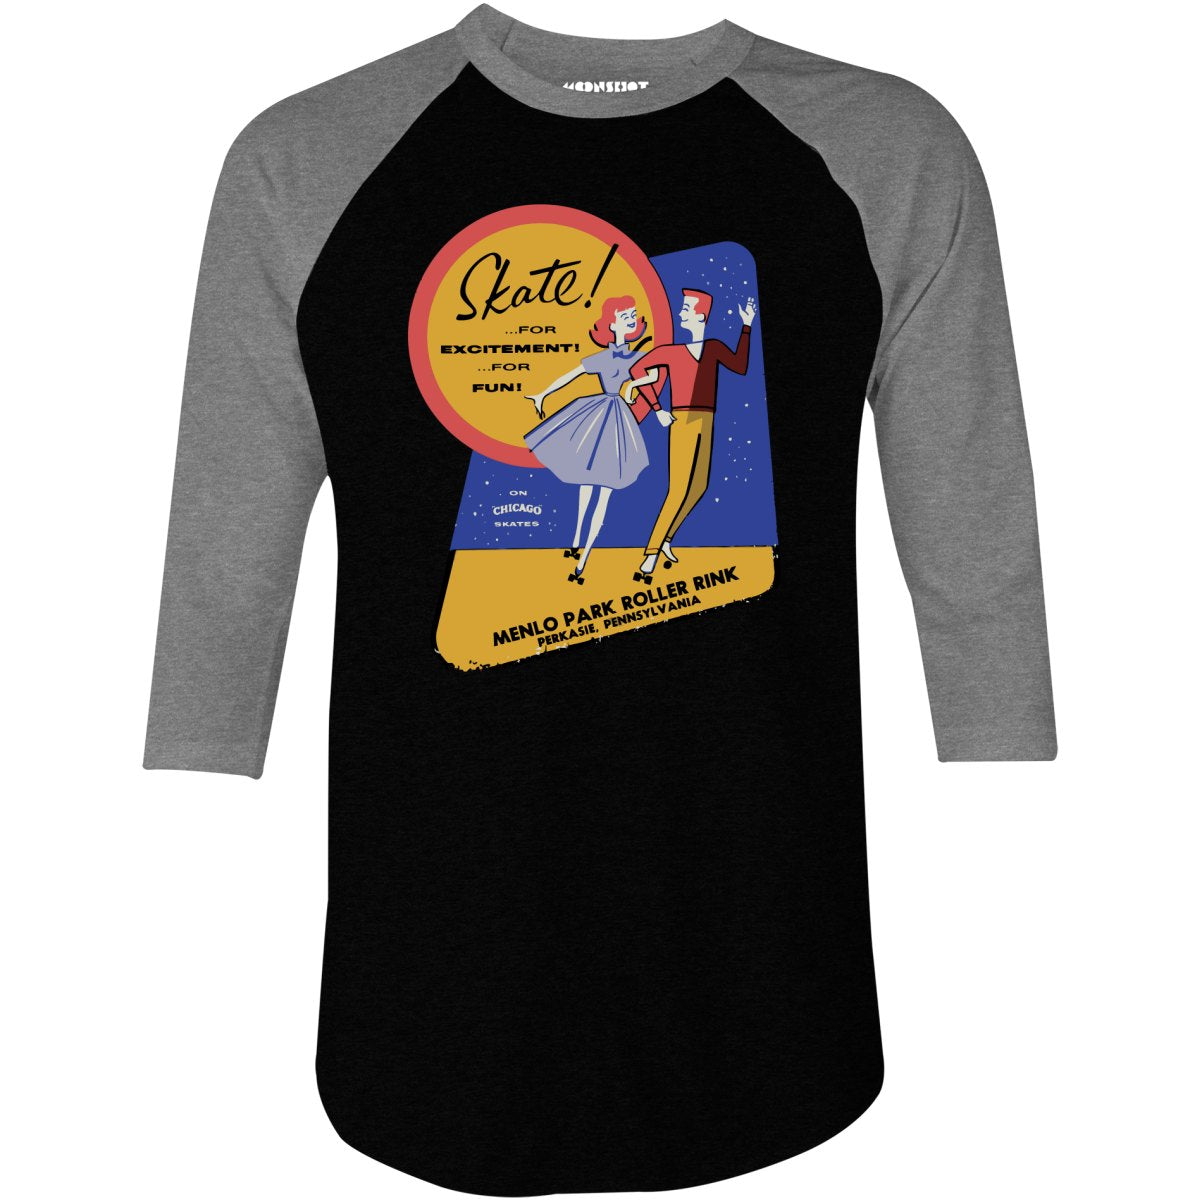 Menlo Park Roller Rink - Perkasie, PA - Vintage Roller Rink - 3/4 Sleeve Raglan T-Shirt